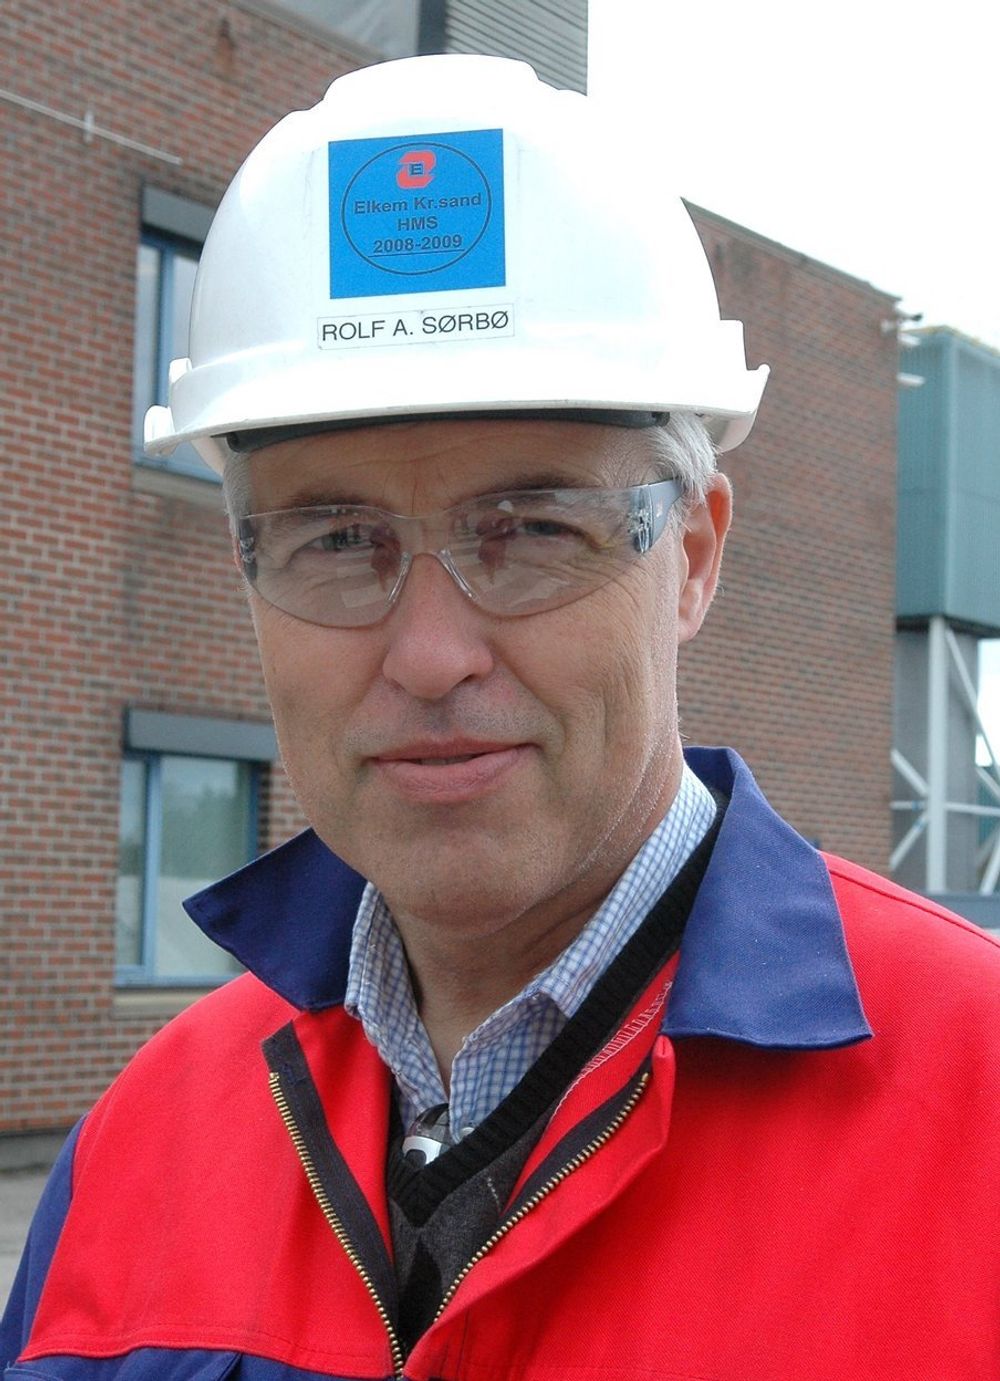 VIL UTVIDE: Direktør Rolf A. Sørbø vil utvide og intensivere arbeidet med å utvikle prosesser for framstilling av metaller.